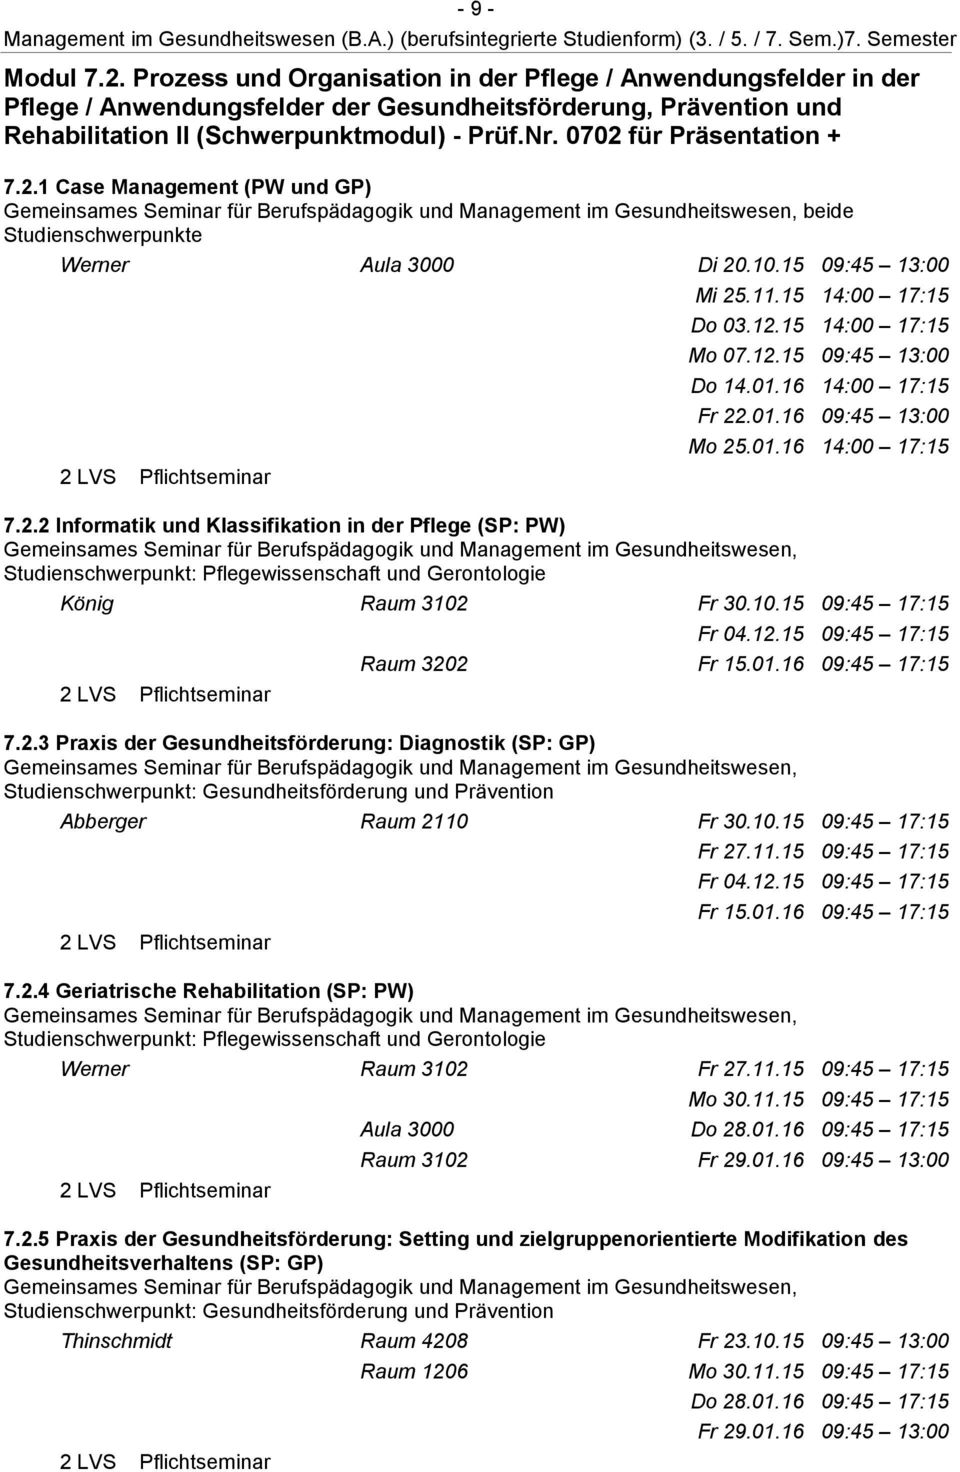 0702 für Präsentation + 7.2.1 Case Management (PW und GP) beide Studienschwerpunkte Werner Aula 3000 Di 20.10.15 09:45 13:00 Mi 25.11.15 14:00 17:15 Do 03.12.15 14:00 17:15 Mo 07.12.15 09:45 13:00 Do 14.